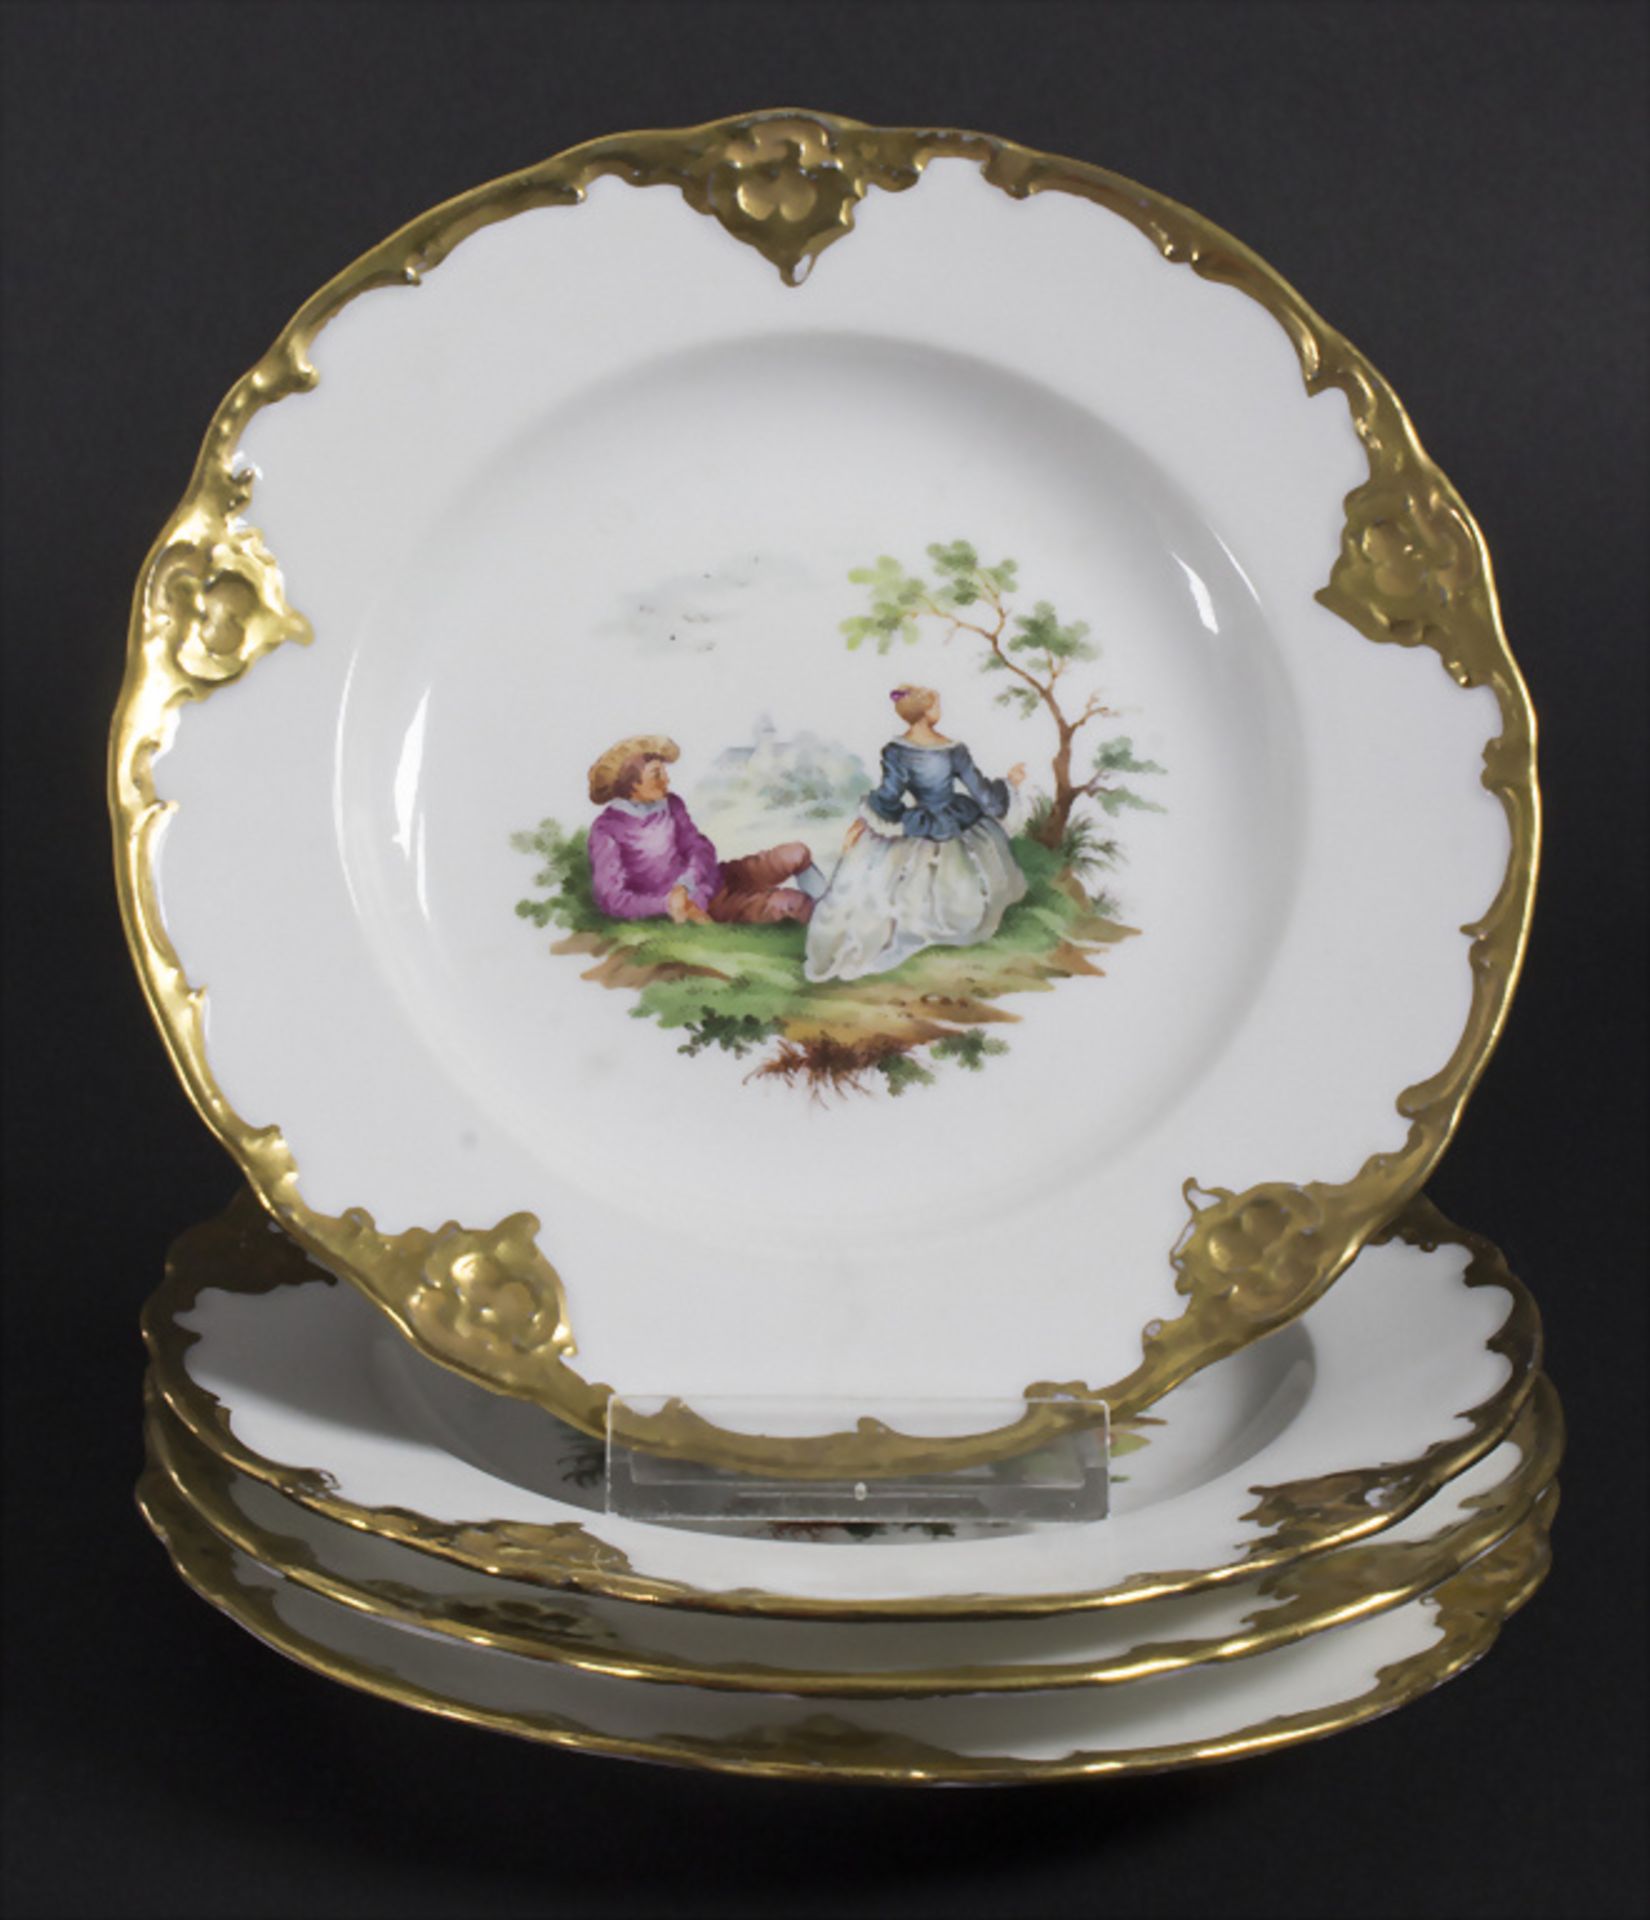 4 Zierteller / 4 decorative plates, Meissen, 19. Jh.